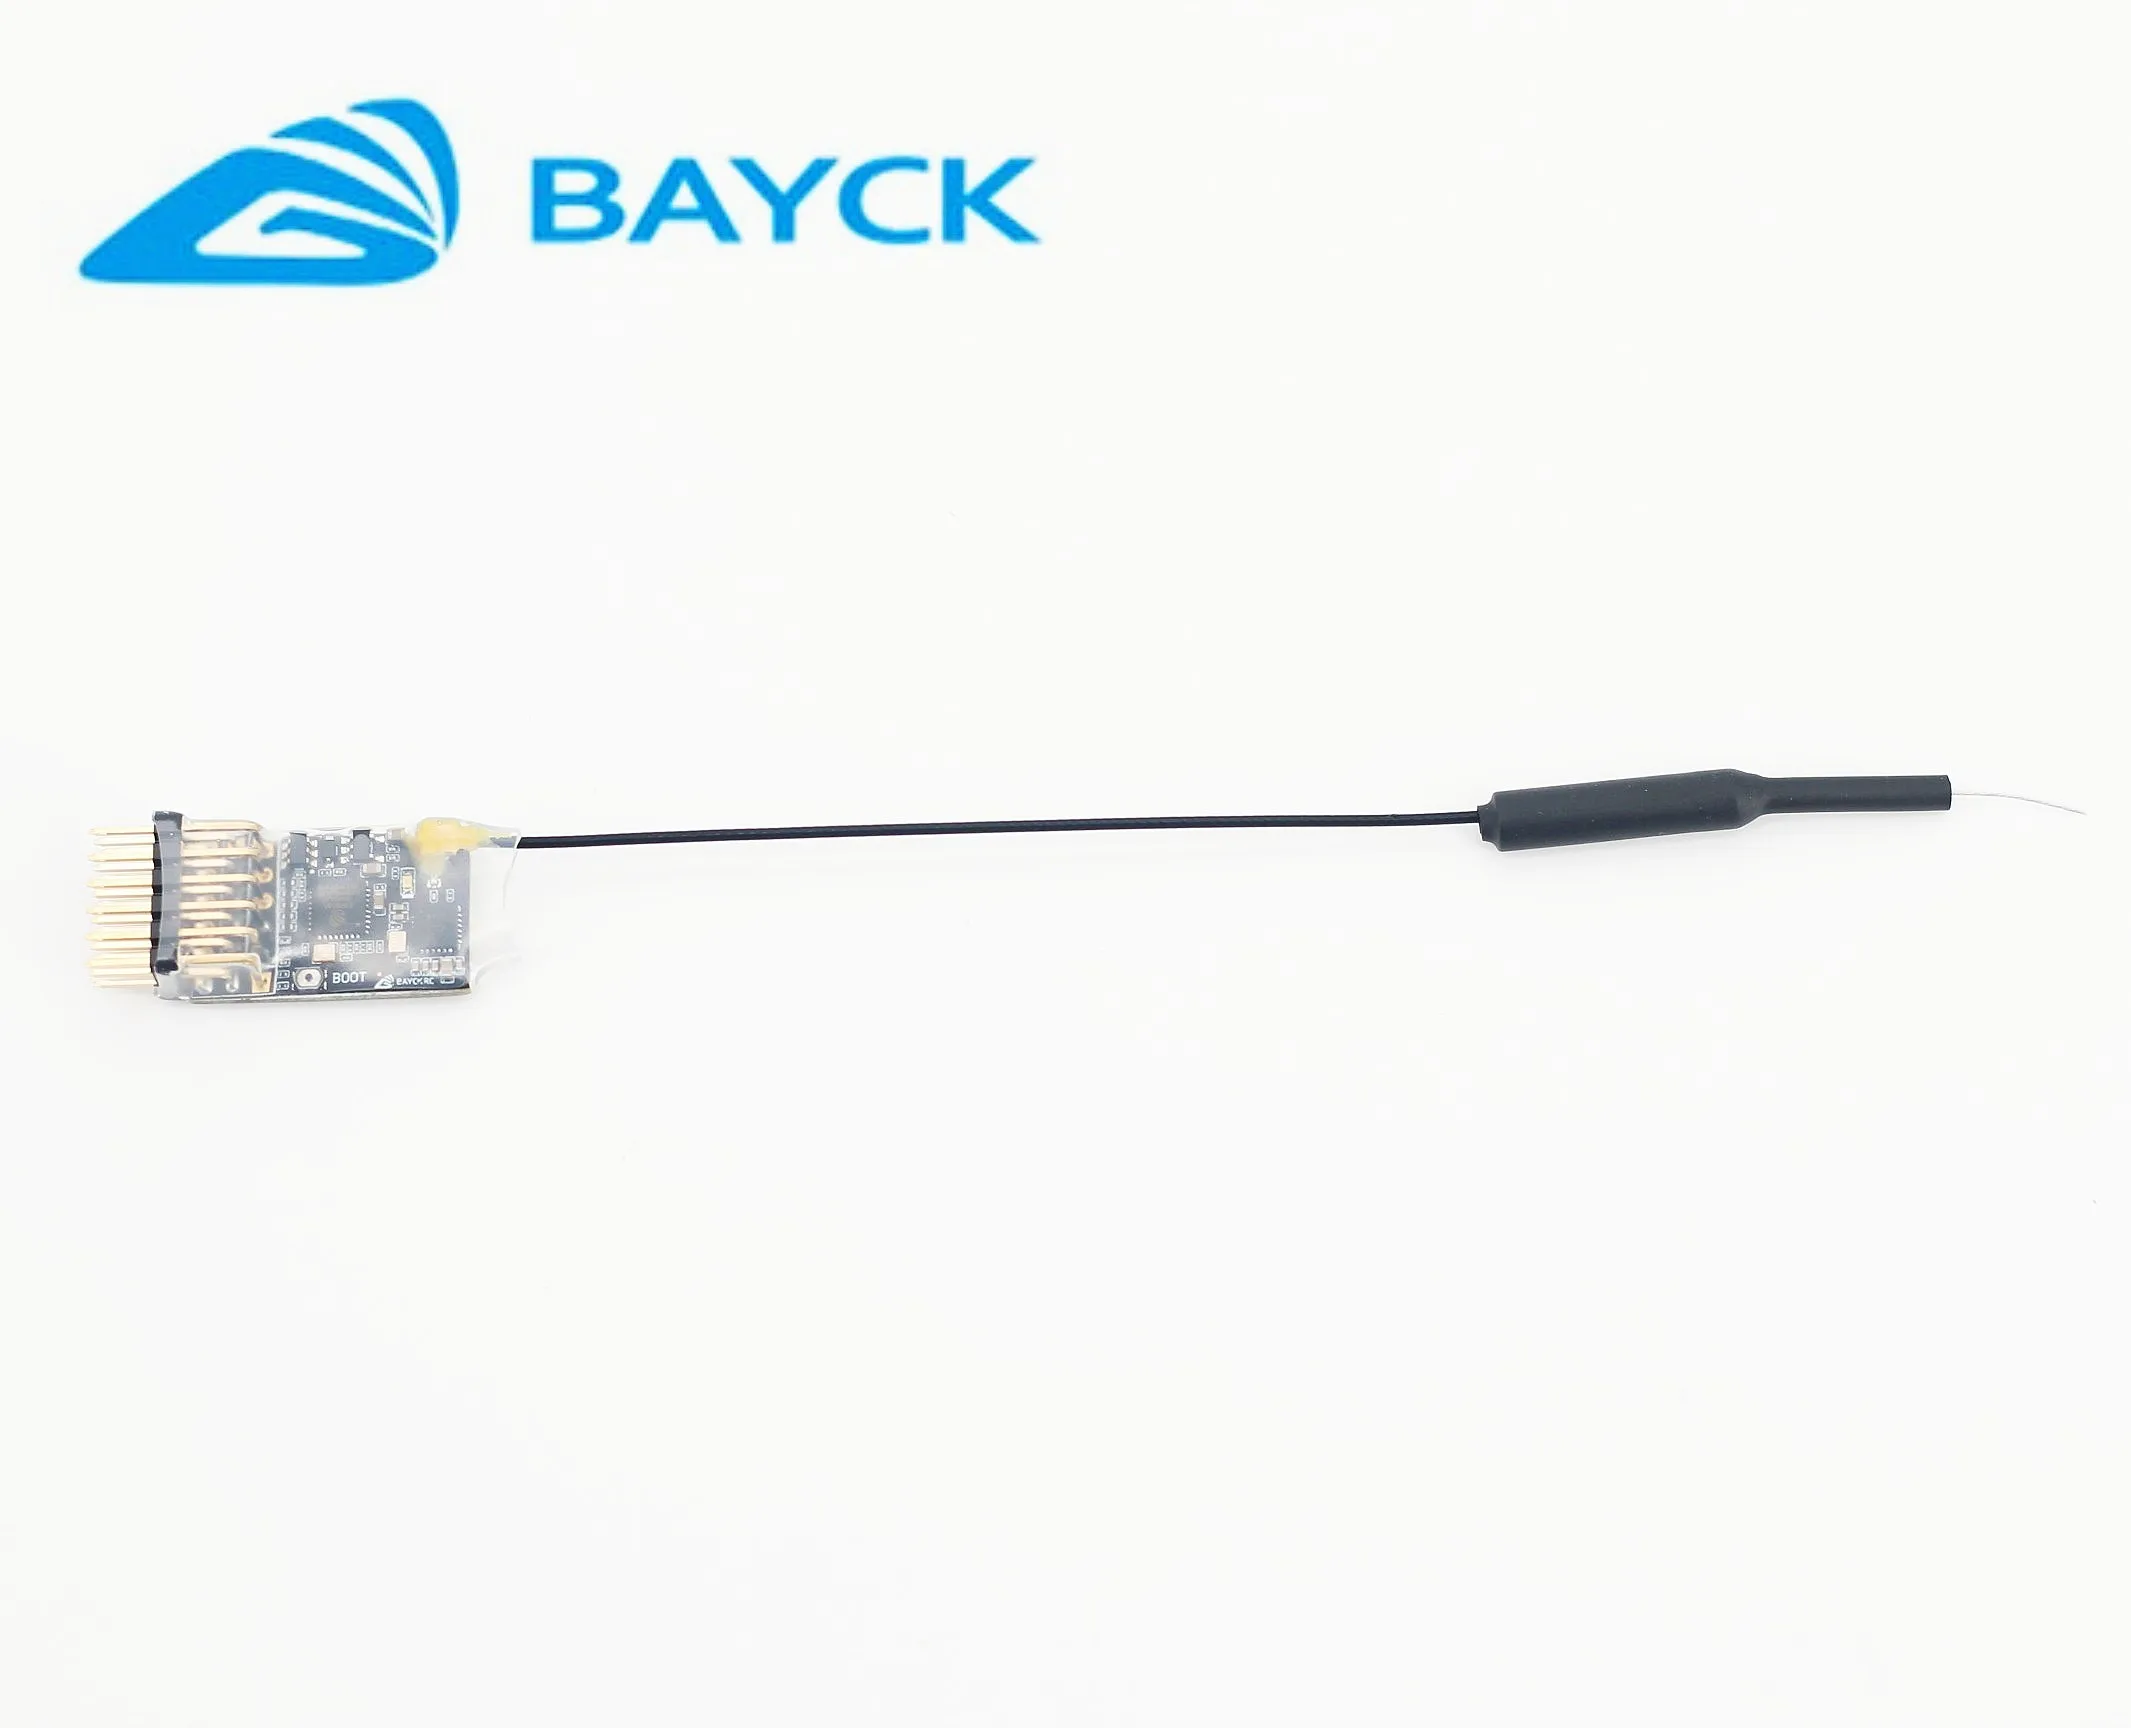 BAYCKRC Cooai BK-2.4G-5CH ELRS 2.4GHz PWM Receiver